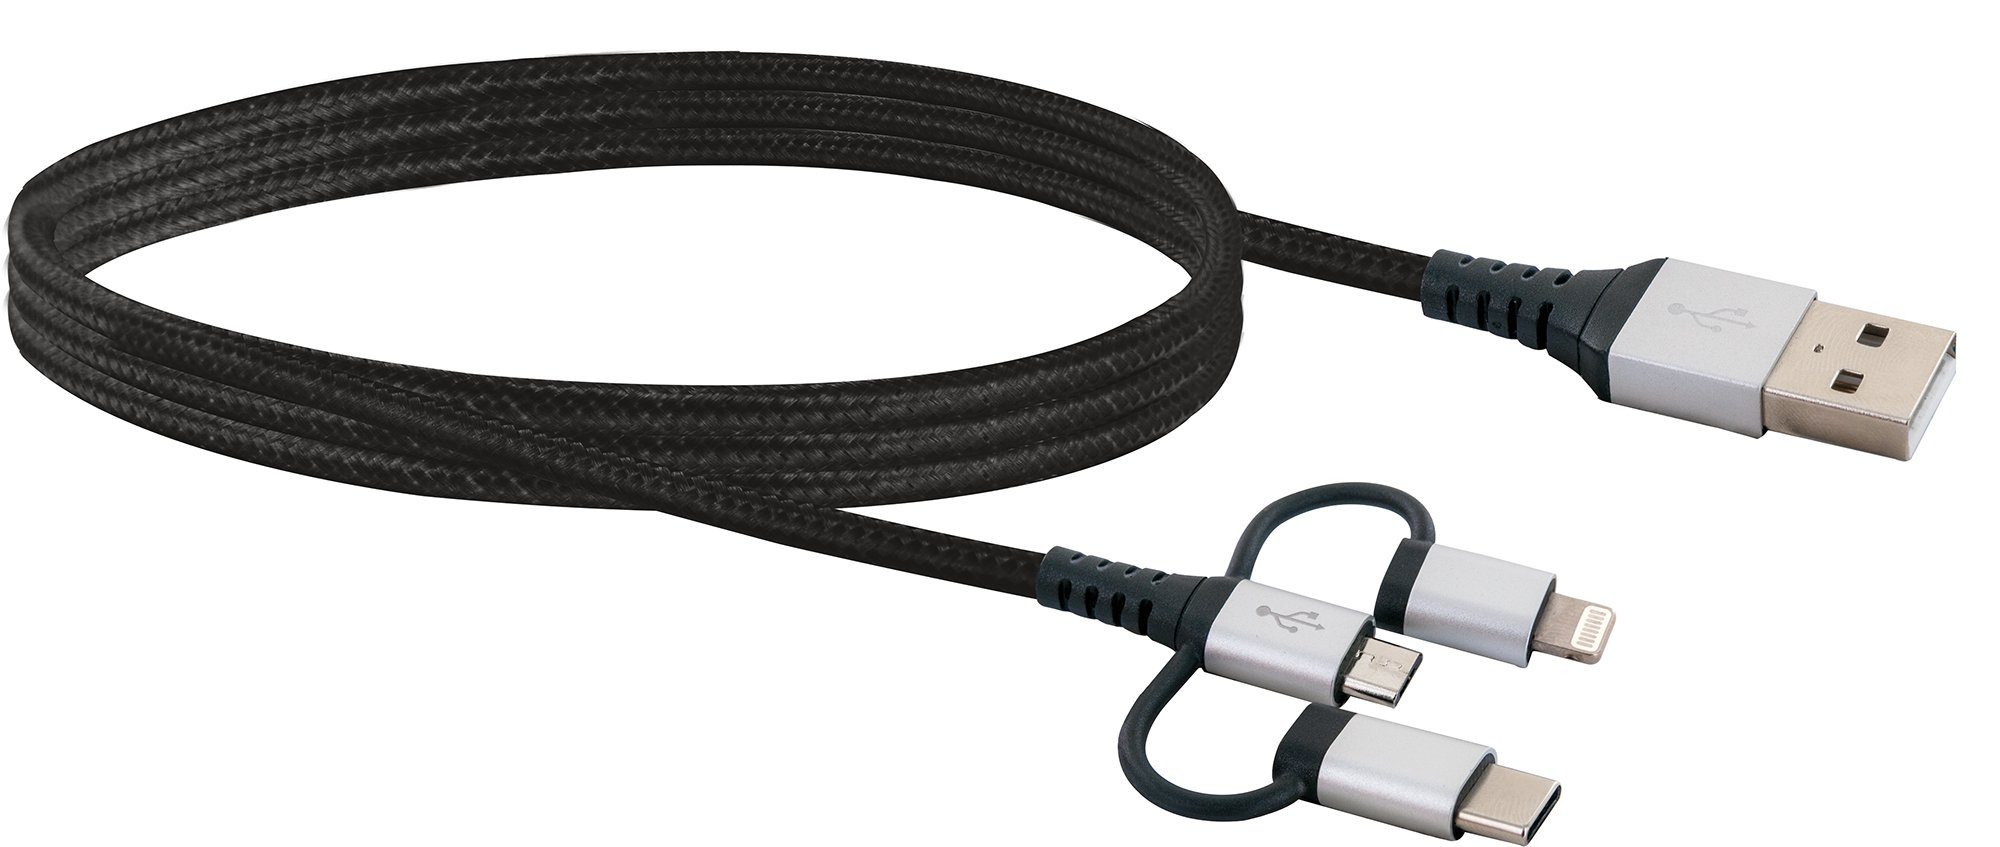 Schwaiger LKU100 533 Smartphone-Kabel, USB 2.0 A Stecker, USB Micro B Stecker, Apple® Lightning Adapter, USB 3.1 C Adapter, (150 cm), universal einsetzbar